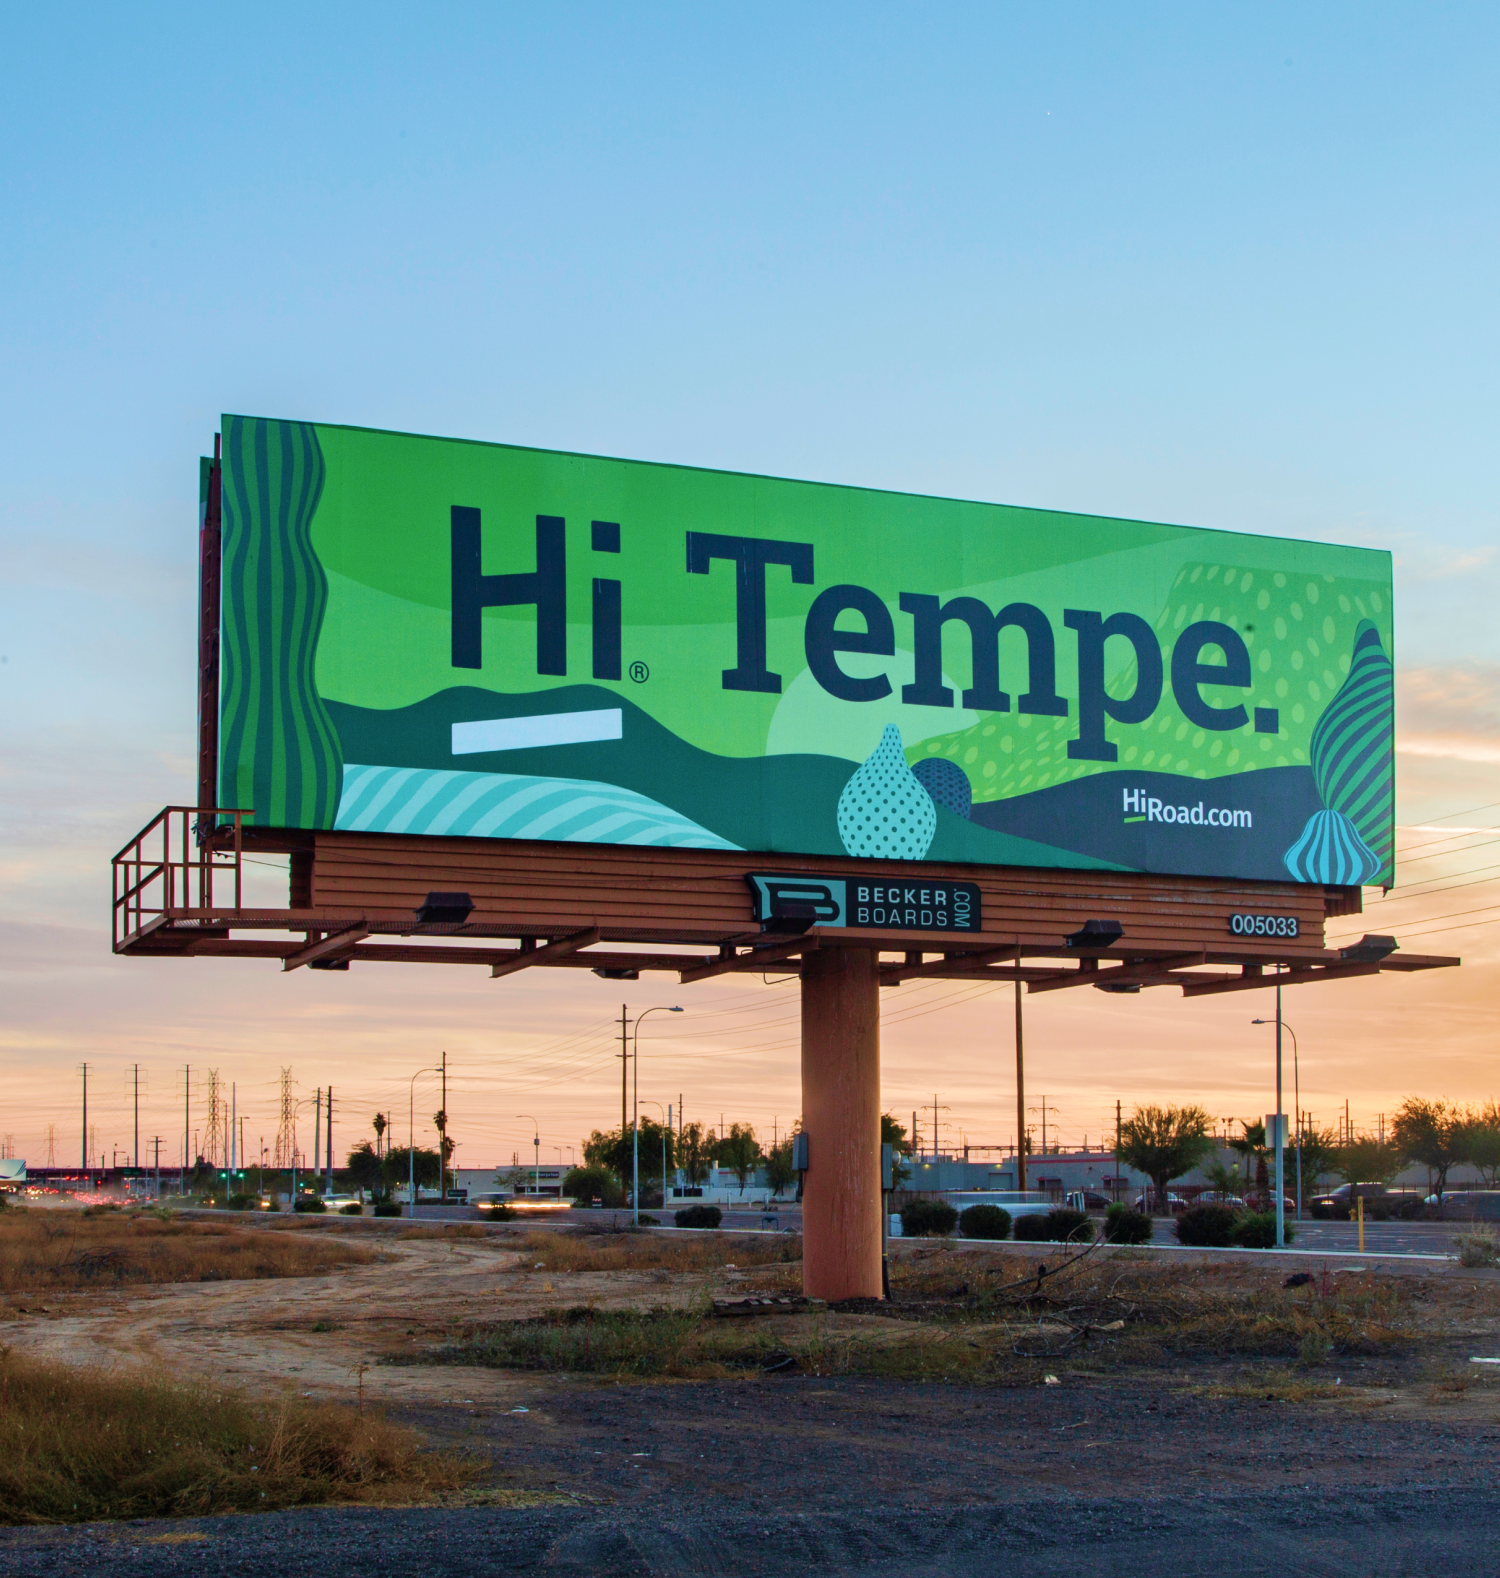 HiRoad Tempe Arizona Billboard